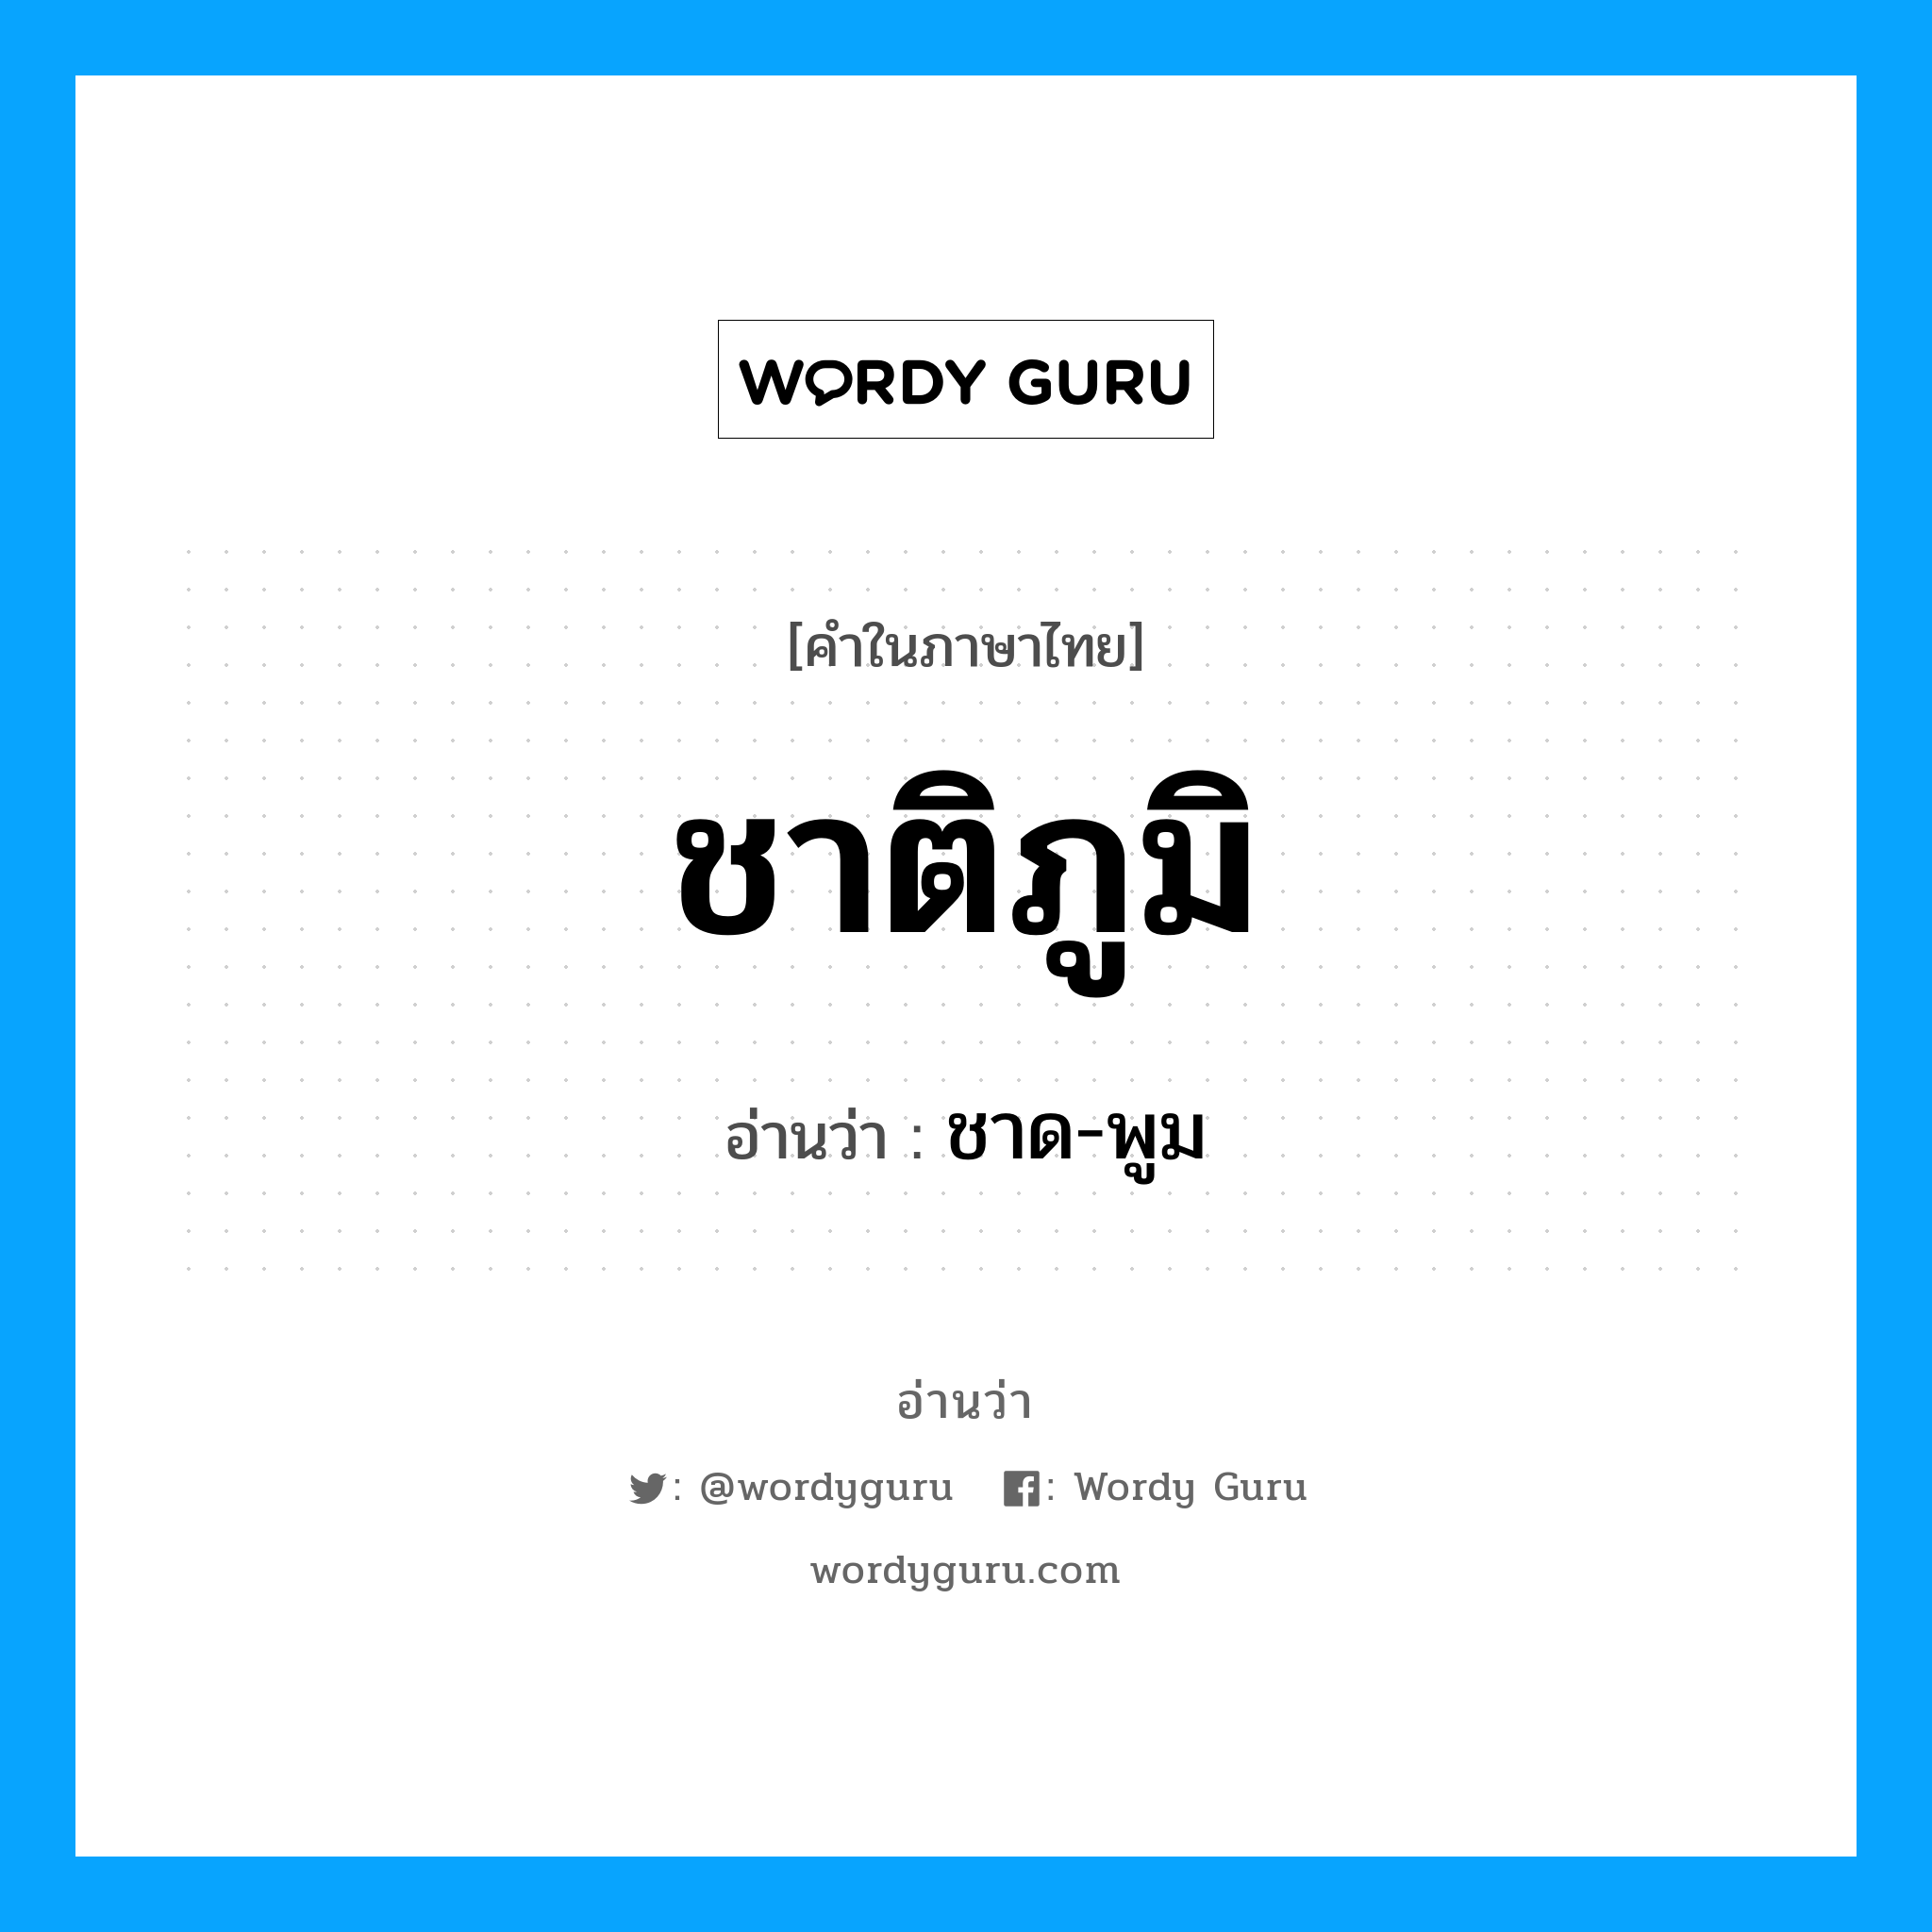 ชาด-พูม เป็นคำอ่านของคำไหน?, คำในภาษาไทย ชาด-พูม อ่านว่า ชาติภูมิ